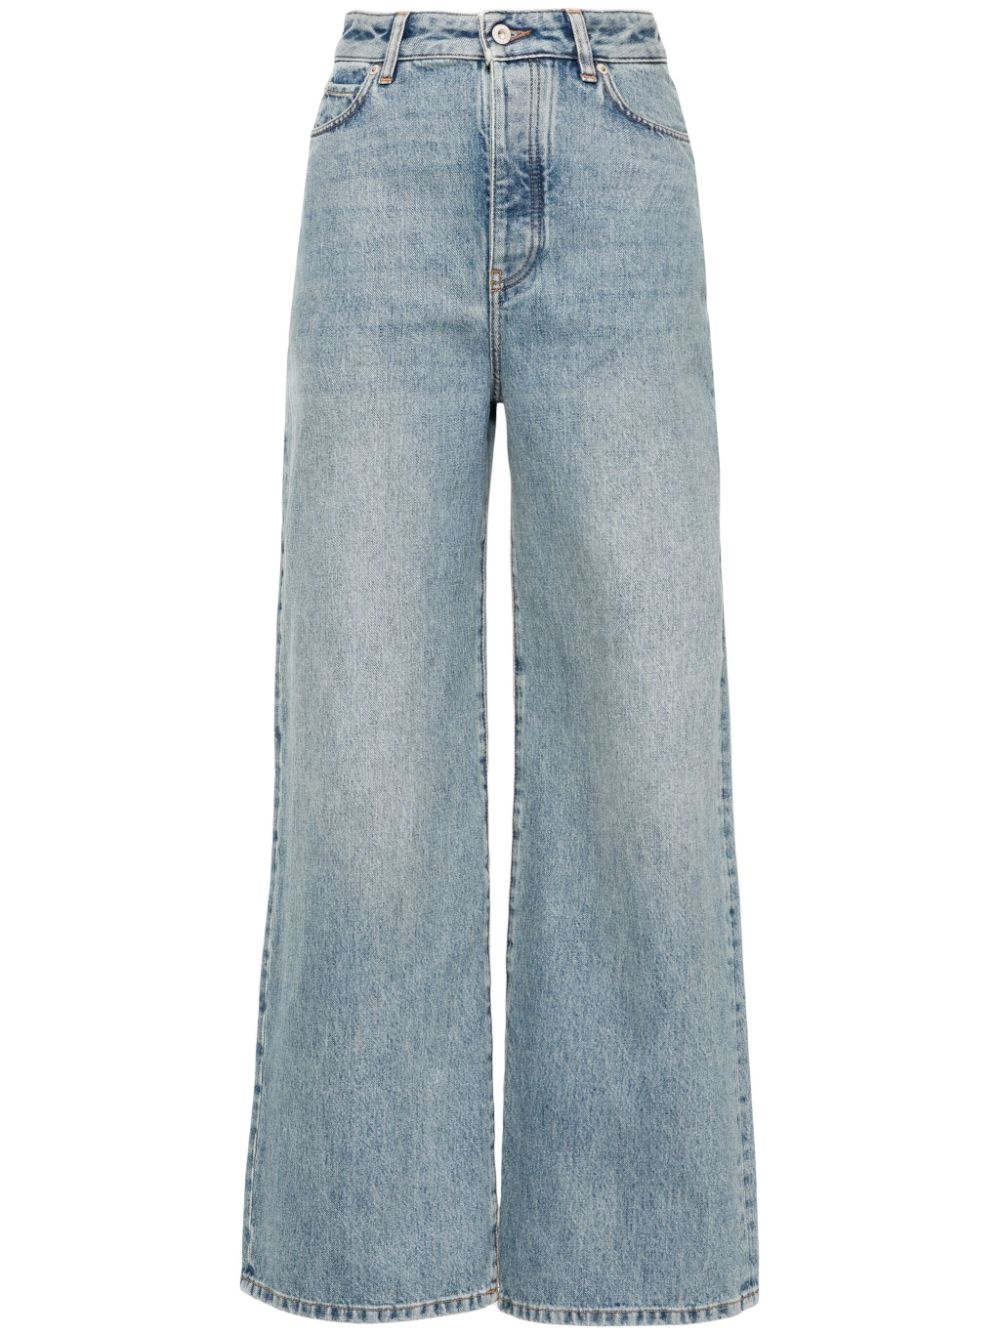 High waisted denim jeans - 1